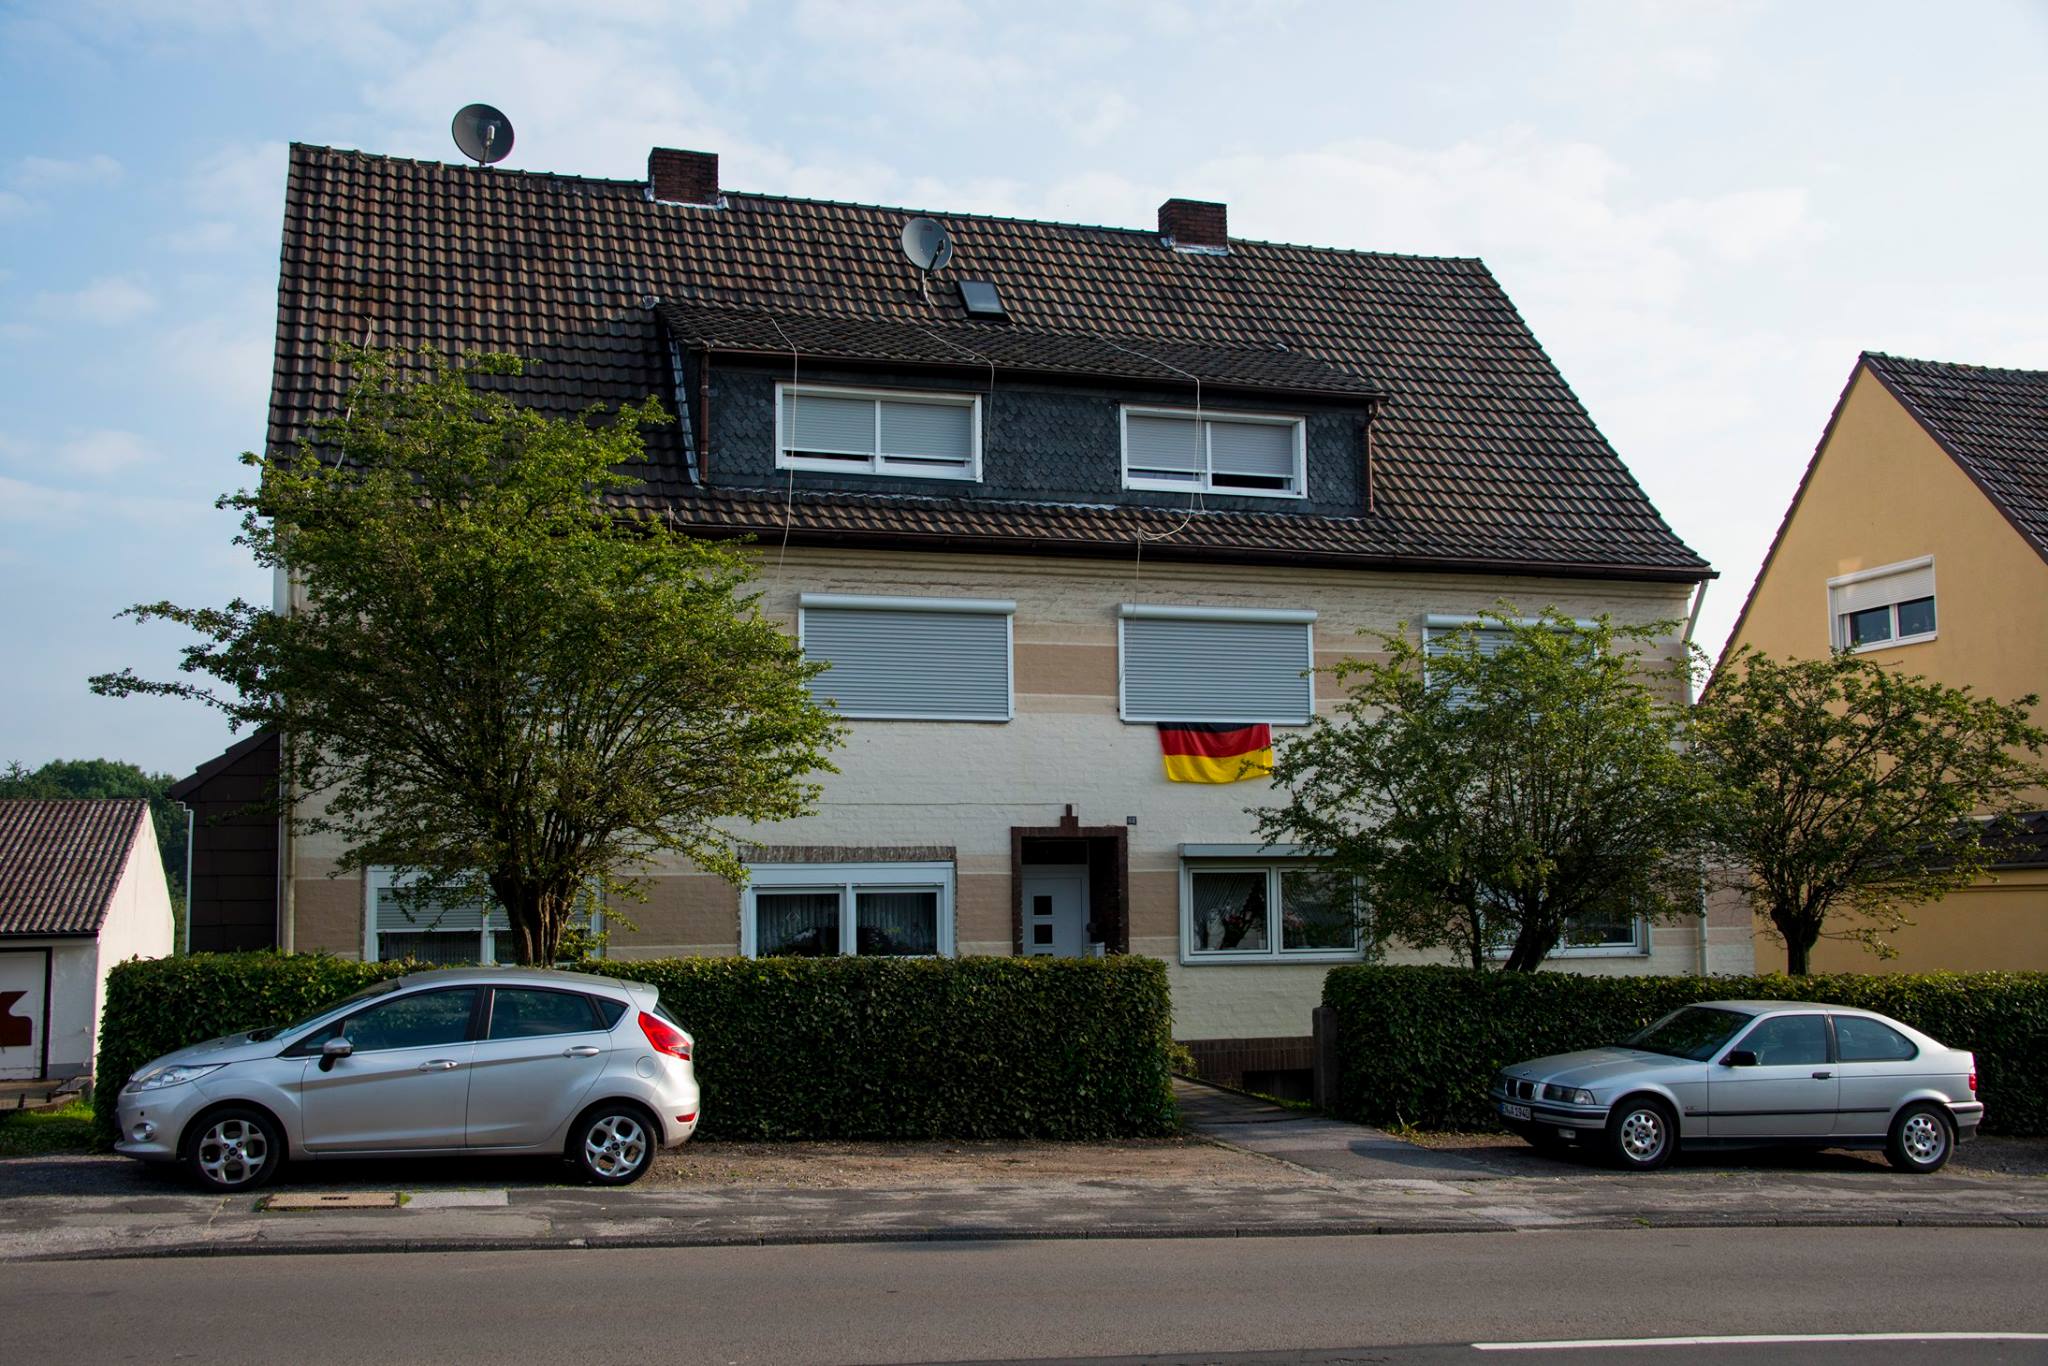 Referenzen von Scherwat: Mehrfamilienhaus in Gevelsberg (vorher)